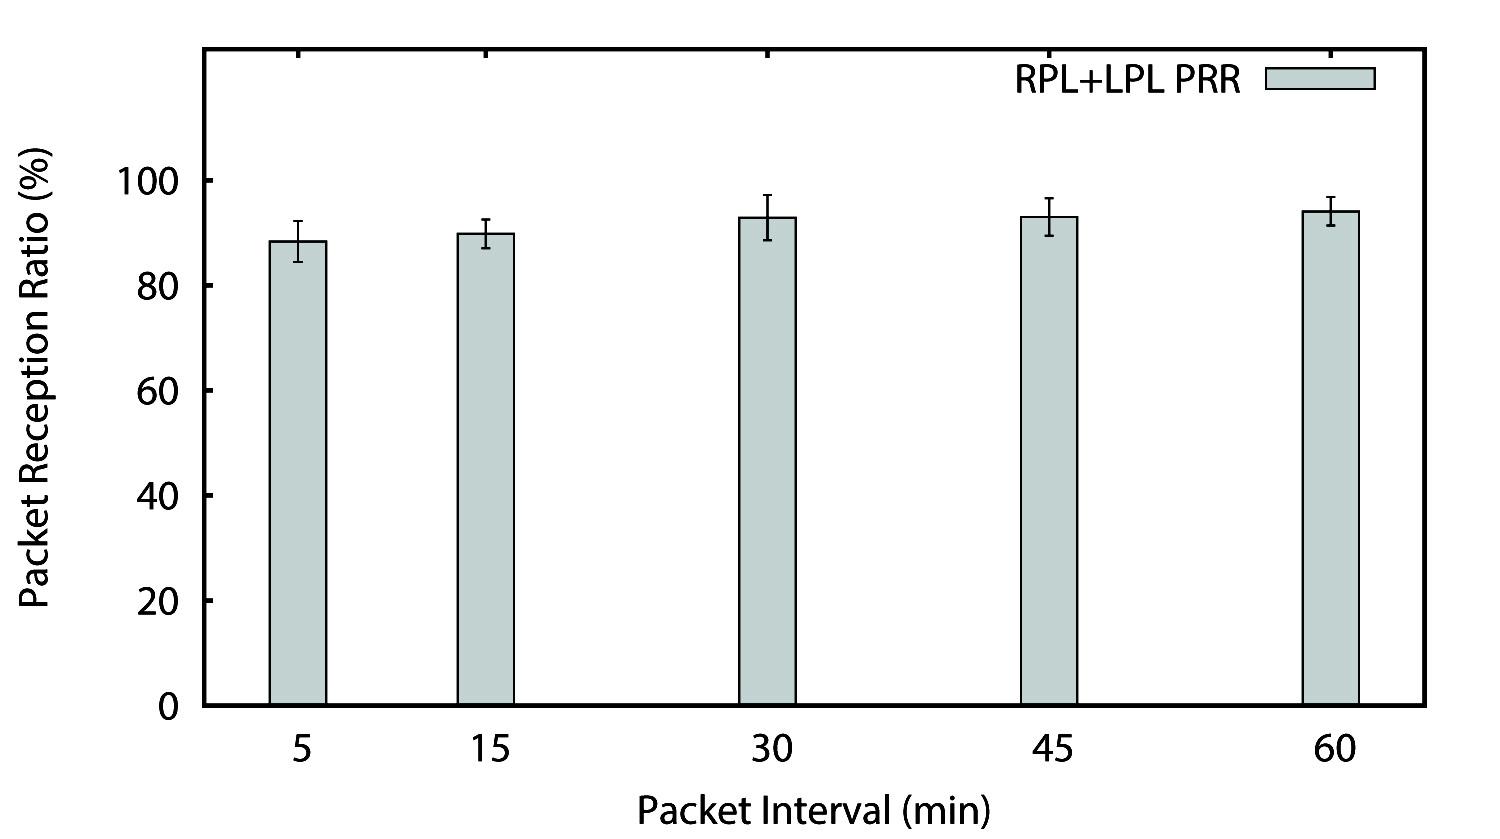 주기적인 보고에 따른 RPL+LPL 기법의 패킷 수신율